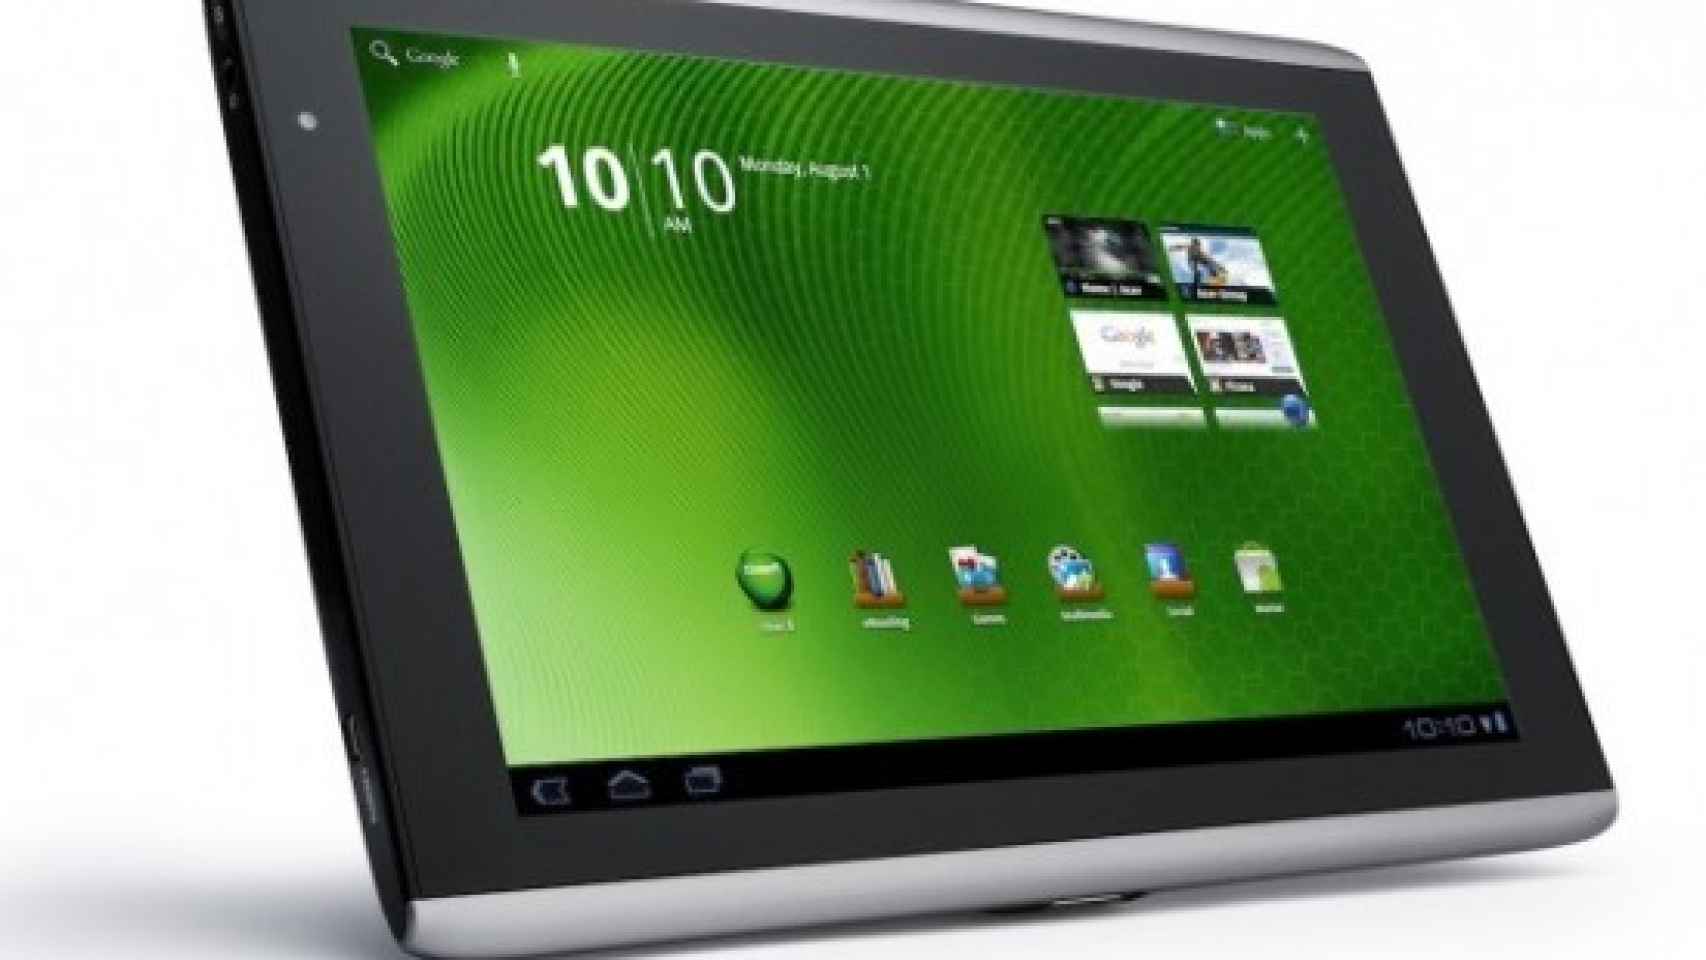 Actualización de la Acer Iconia Tab A500 a Android Honeycomb 3.1